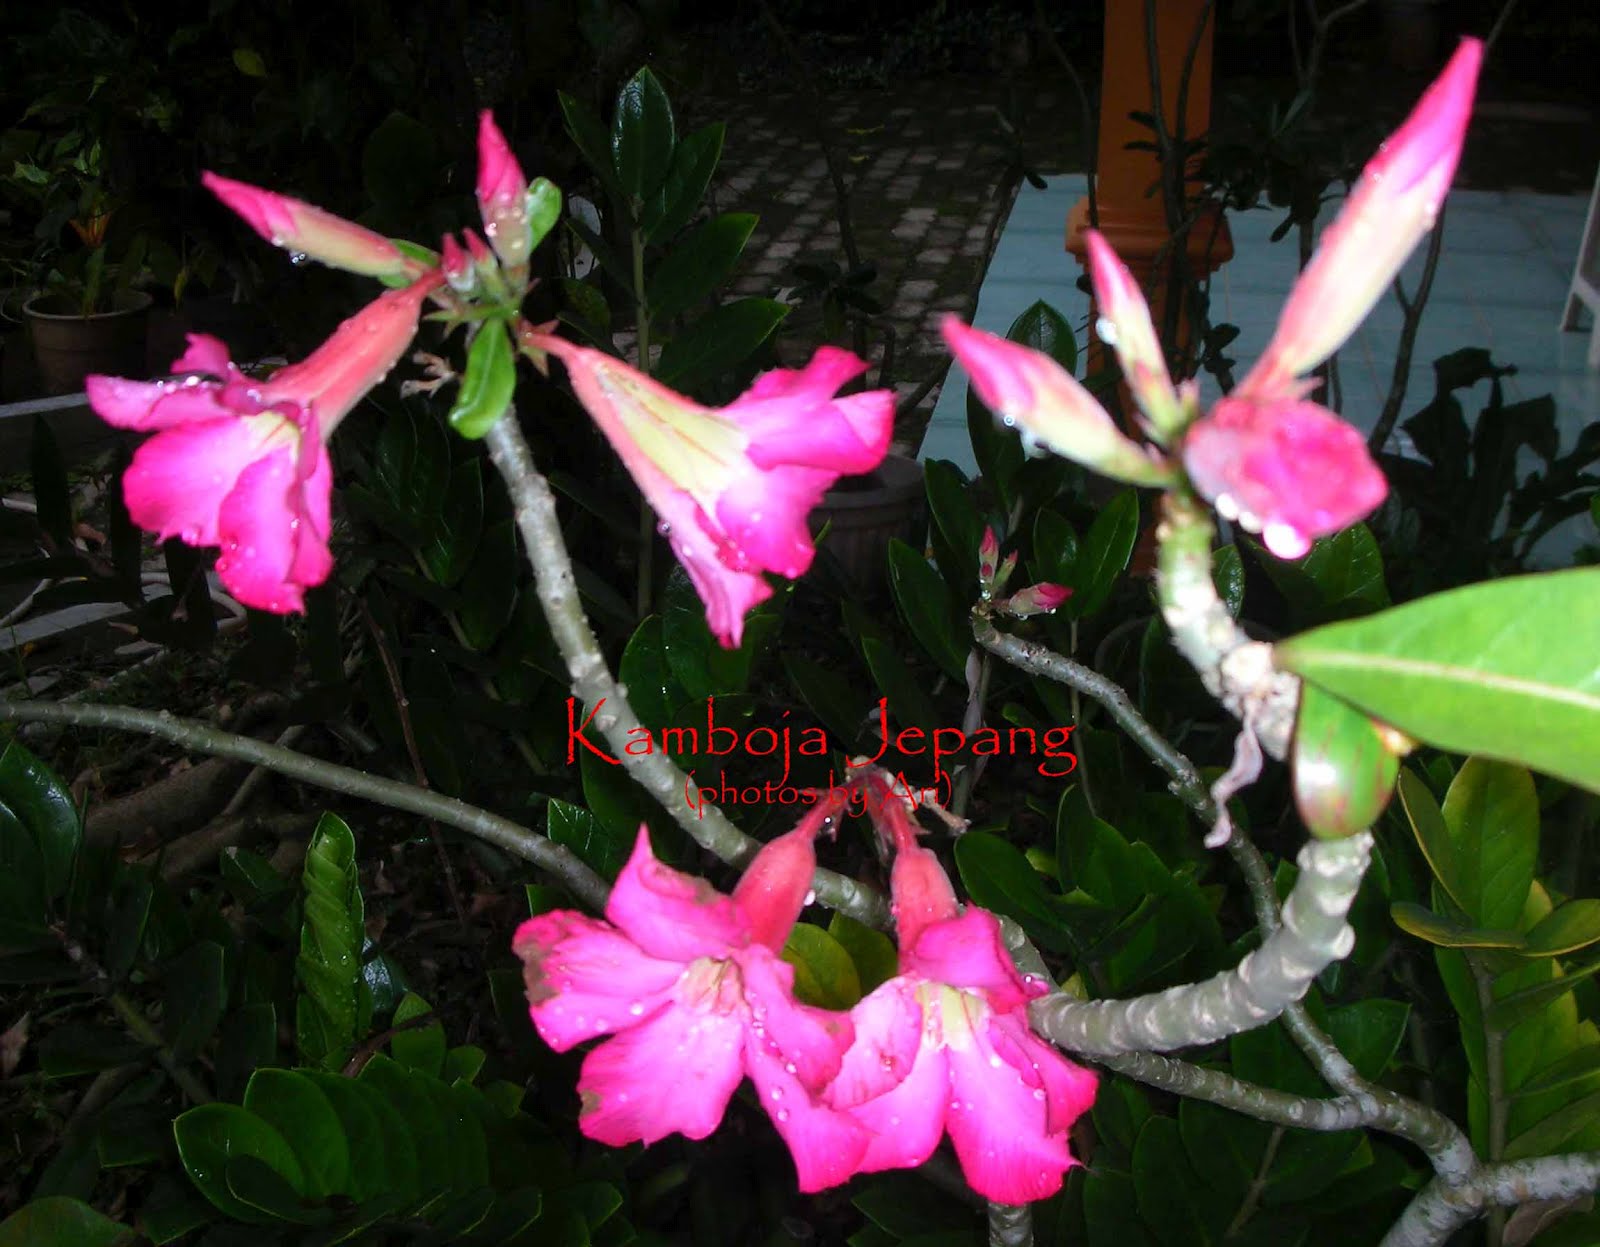 Floristari bunga  kamboja  jepang pink  6